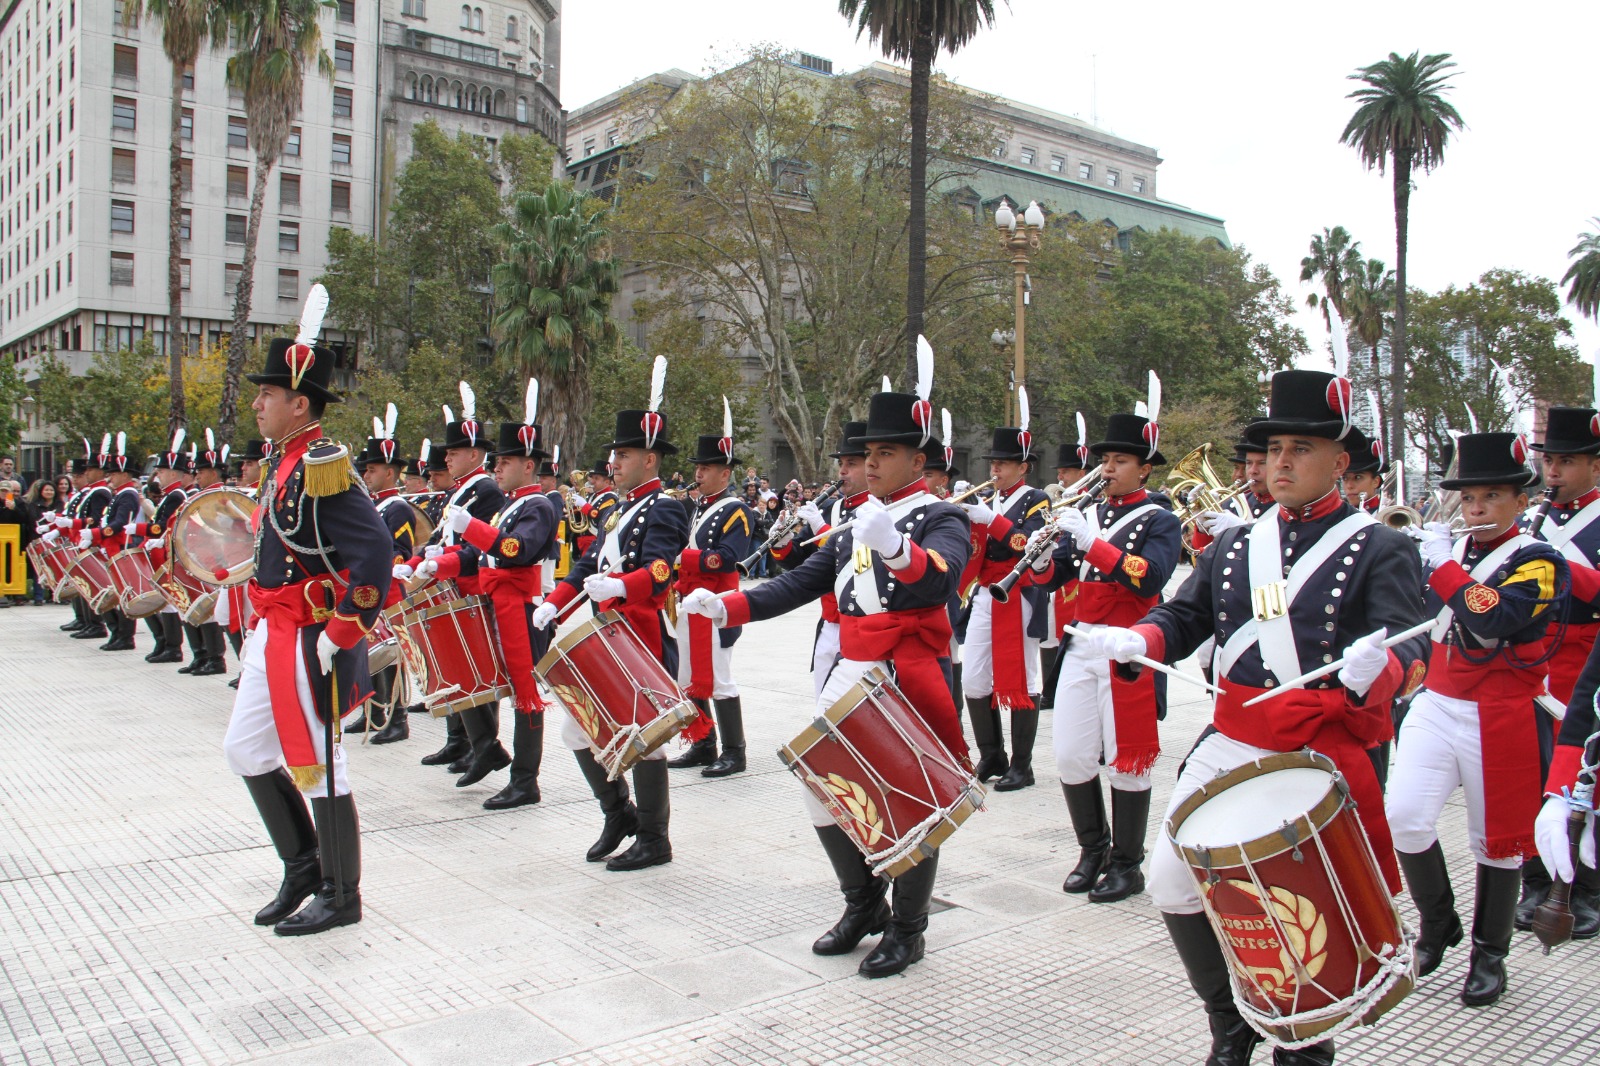 Banda Militar "Tambor de Tacuarí"